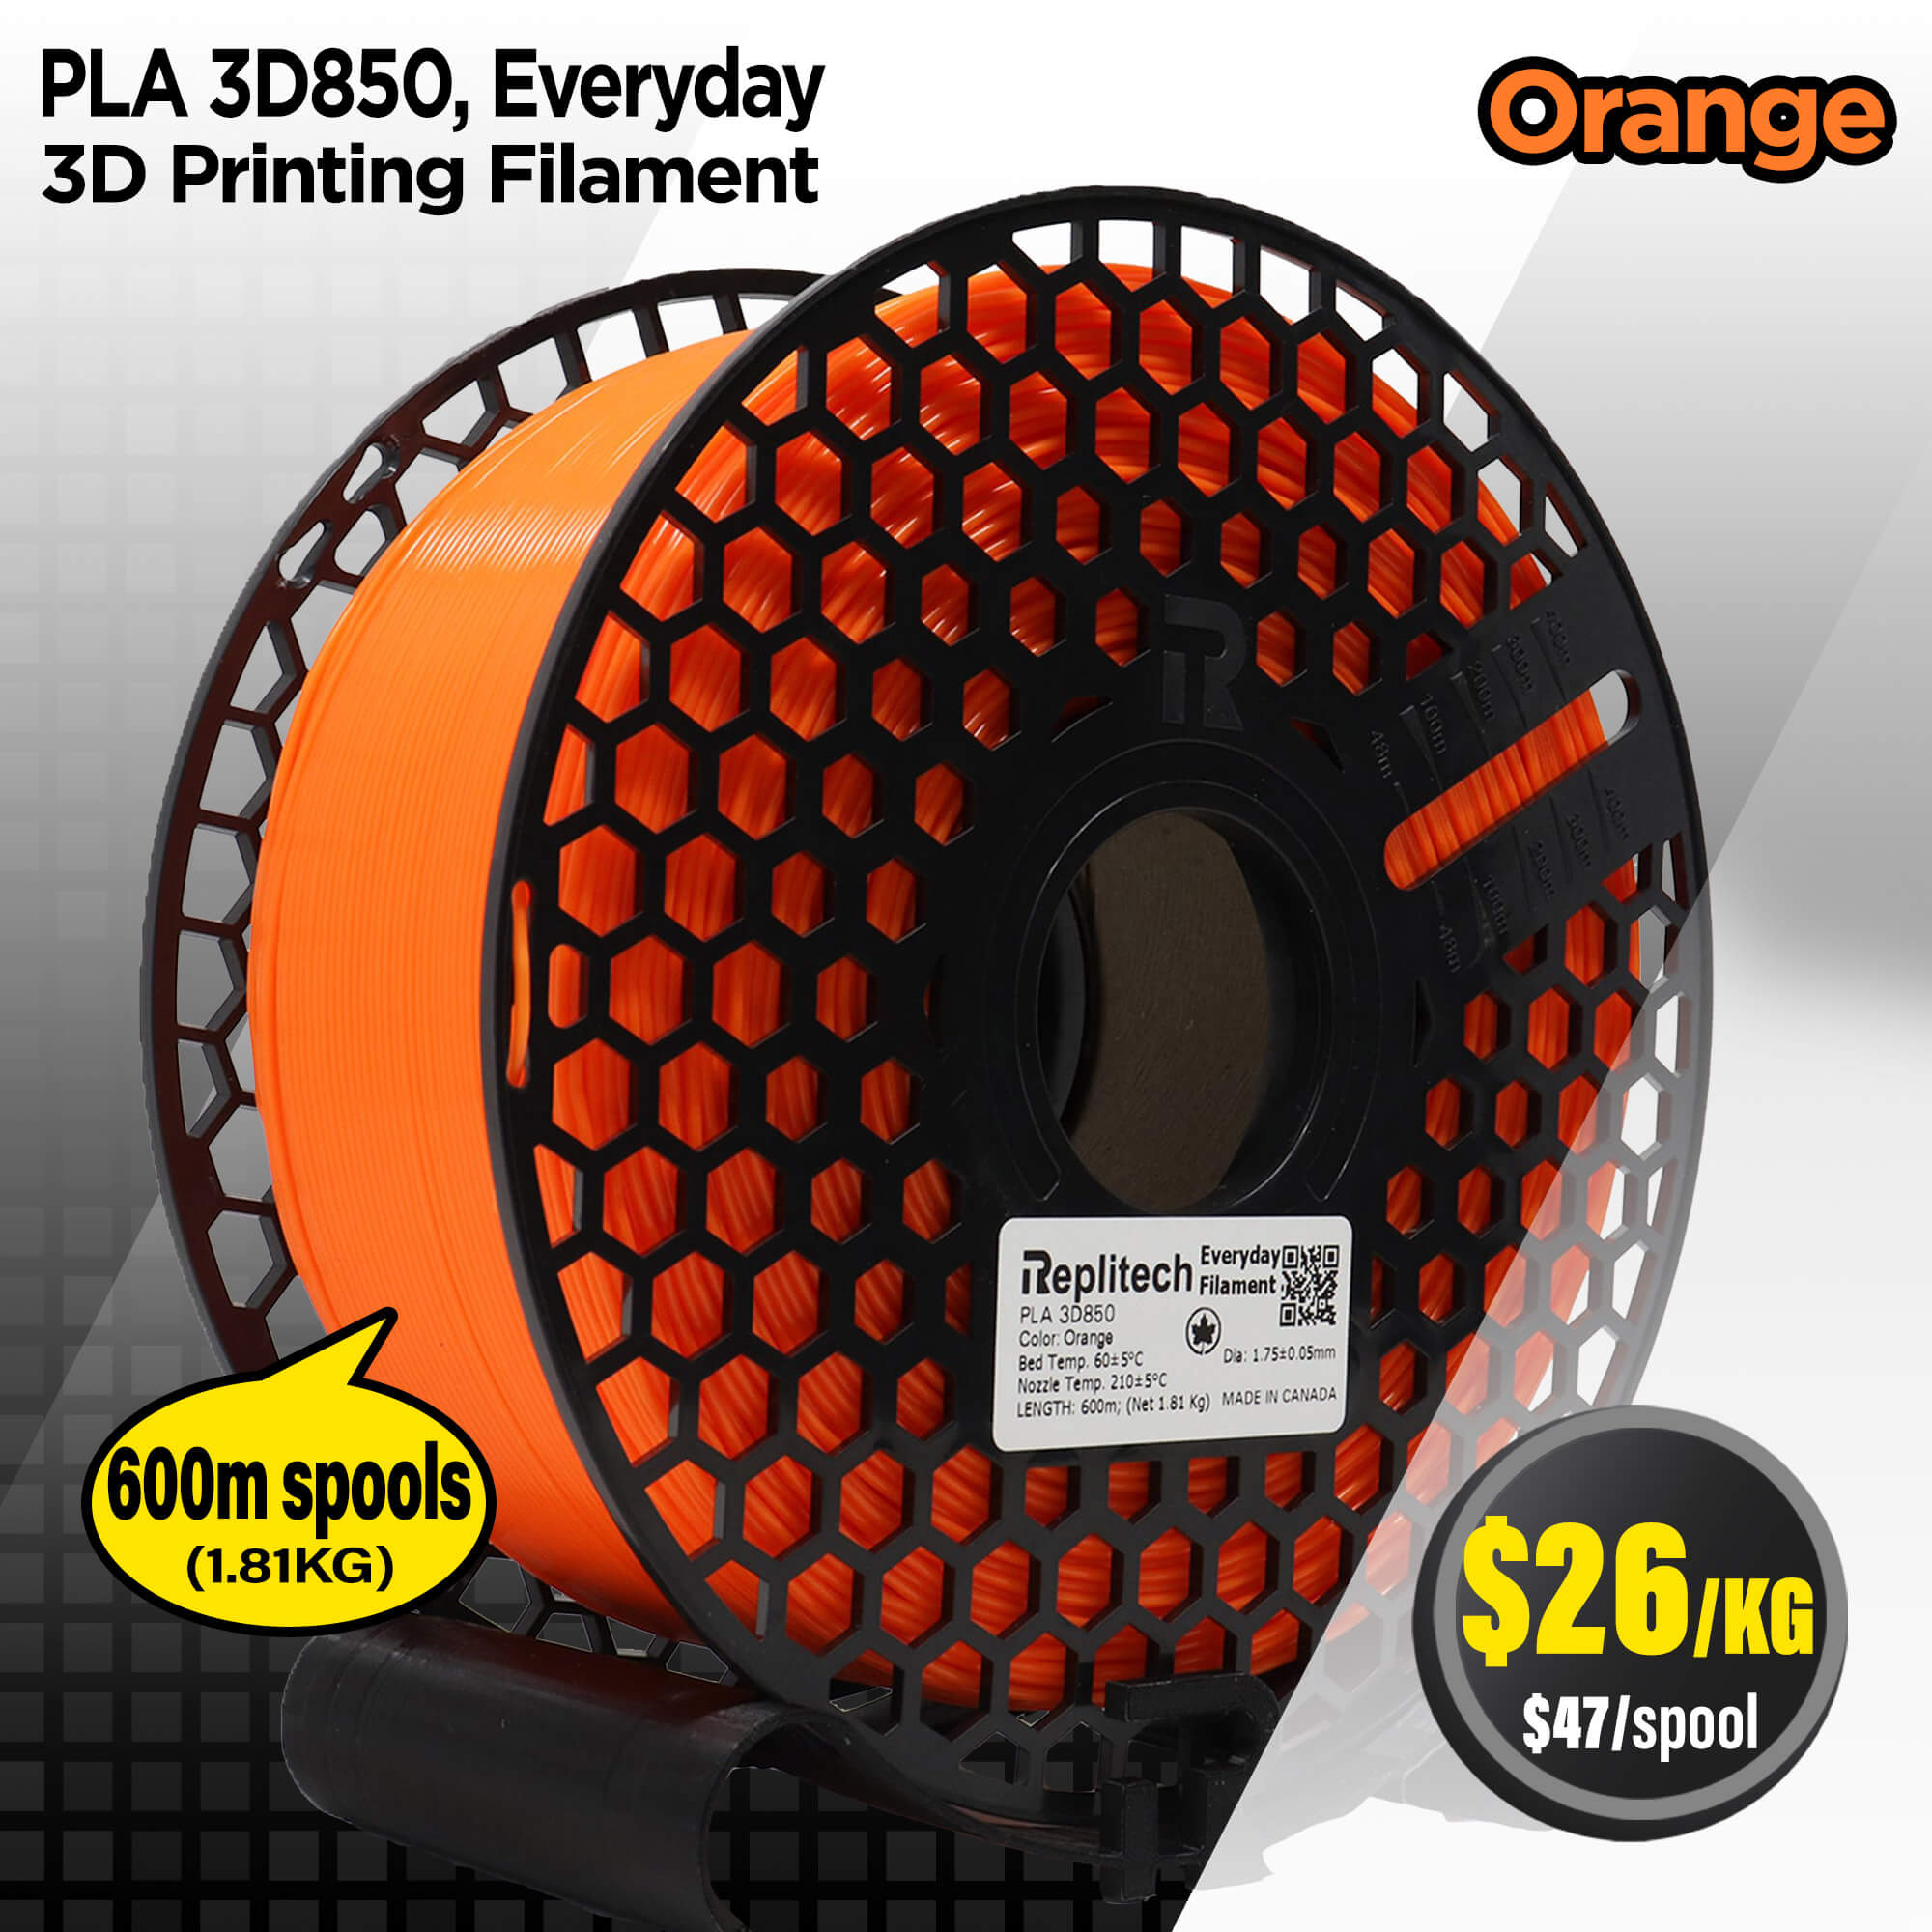 PLA 3D850 Everyday Orange